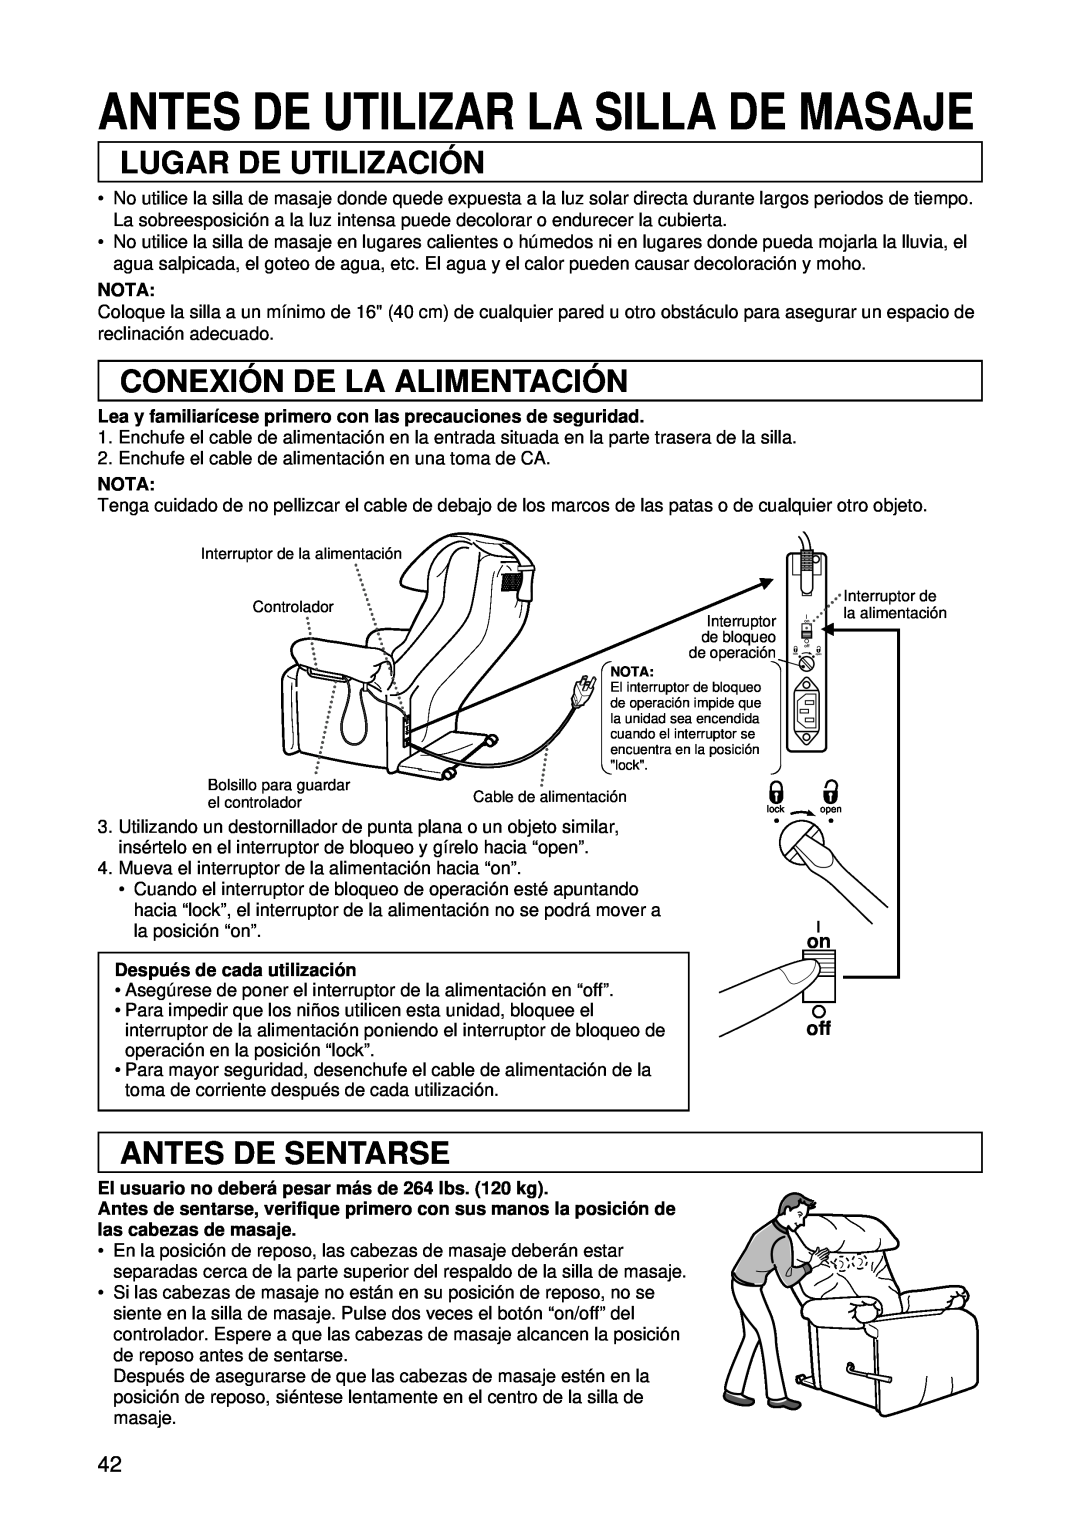 Panasonic EP1015 manuel dutilisation Lugar De Utilizació N, Conexió N De La Alimentació N, Antes De Sentarse, on off 